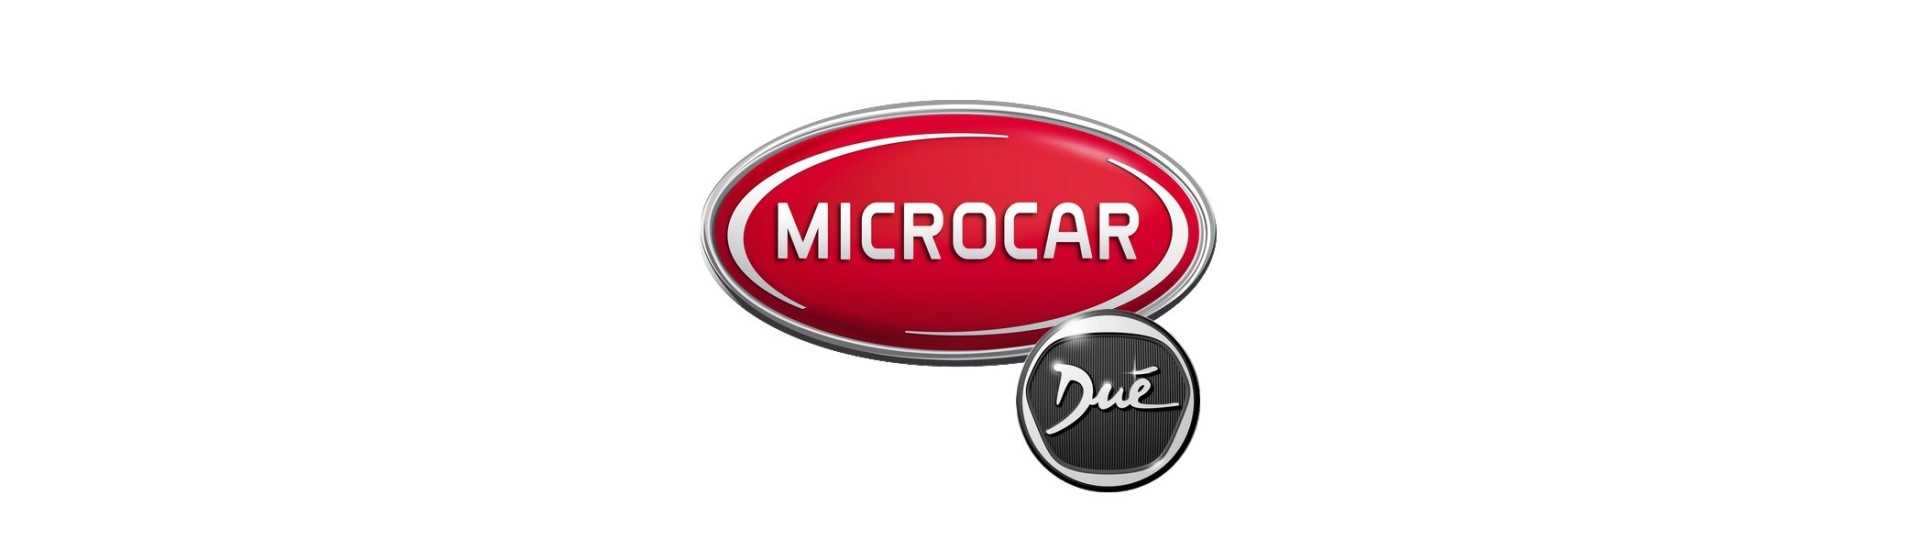 Brazo de suspensión al mejor precio del coche sin permiso Microcar Dué